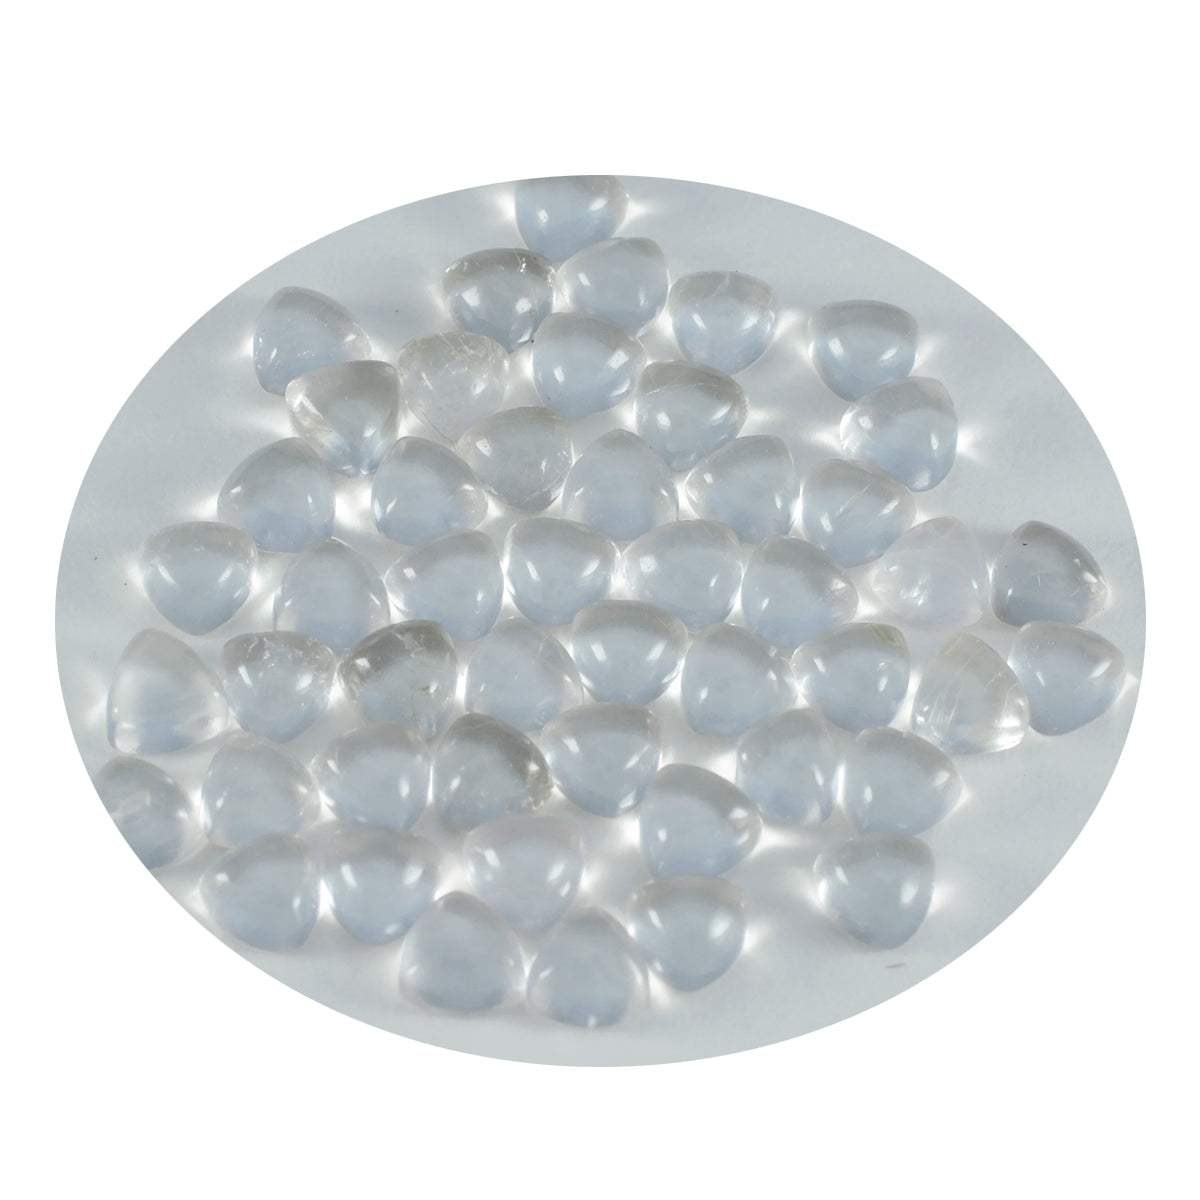 Riyogems – cabochon de quartz en cristal blanc, 6x6mm, en forme de trillion, gemme de qualité fantastique, 1 pièce